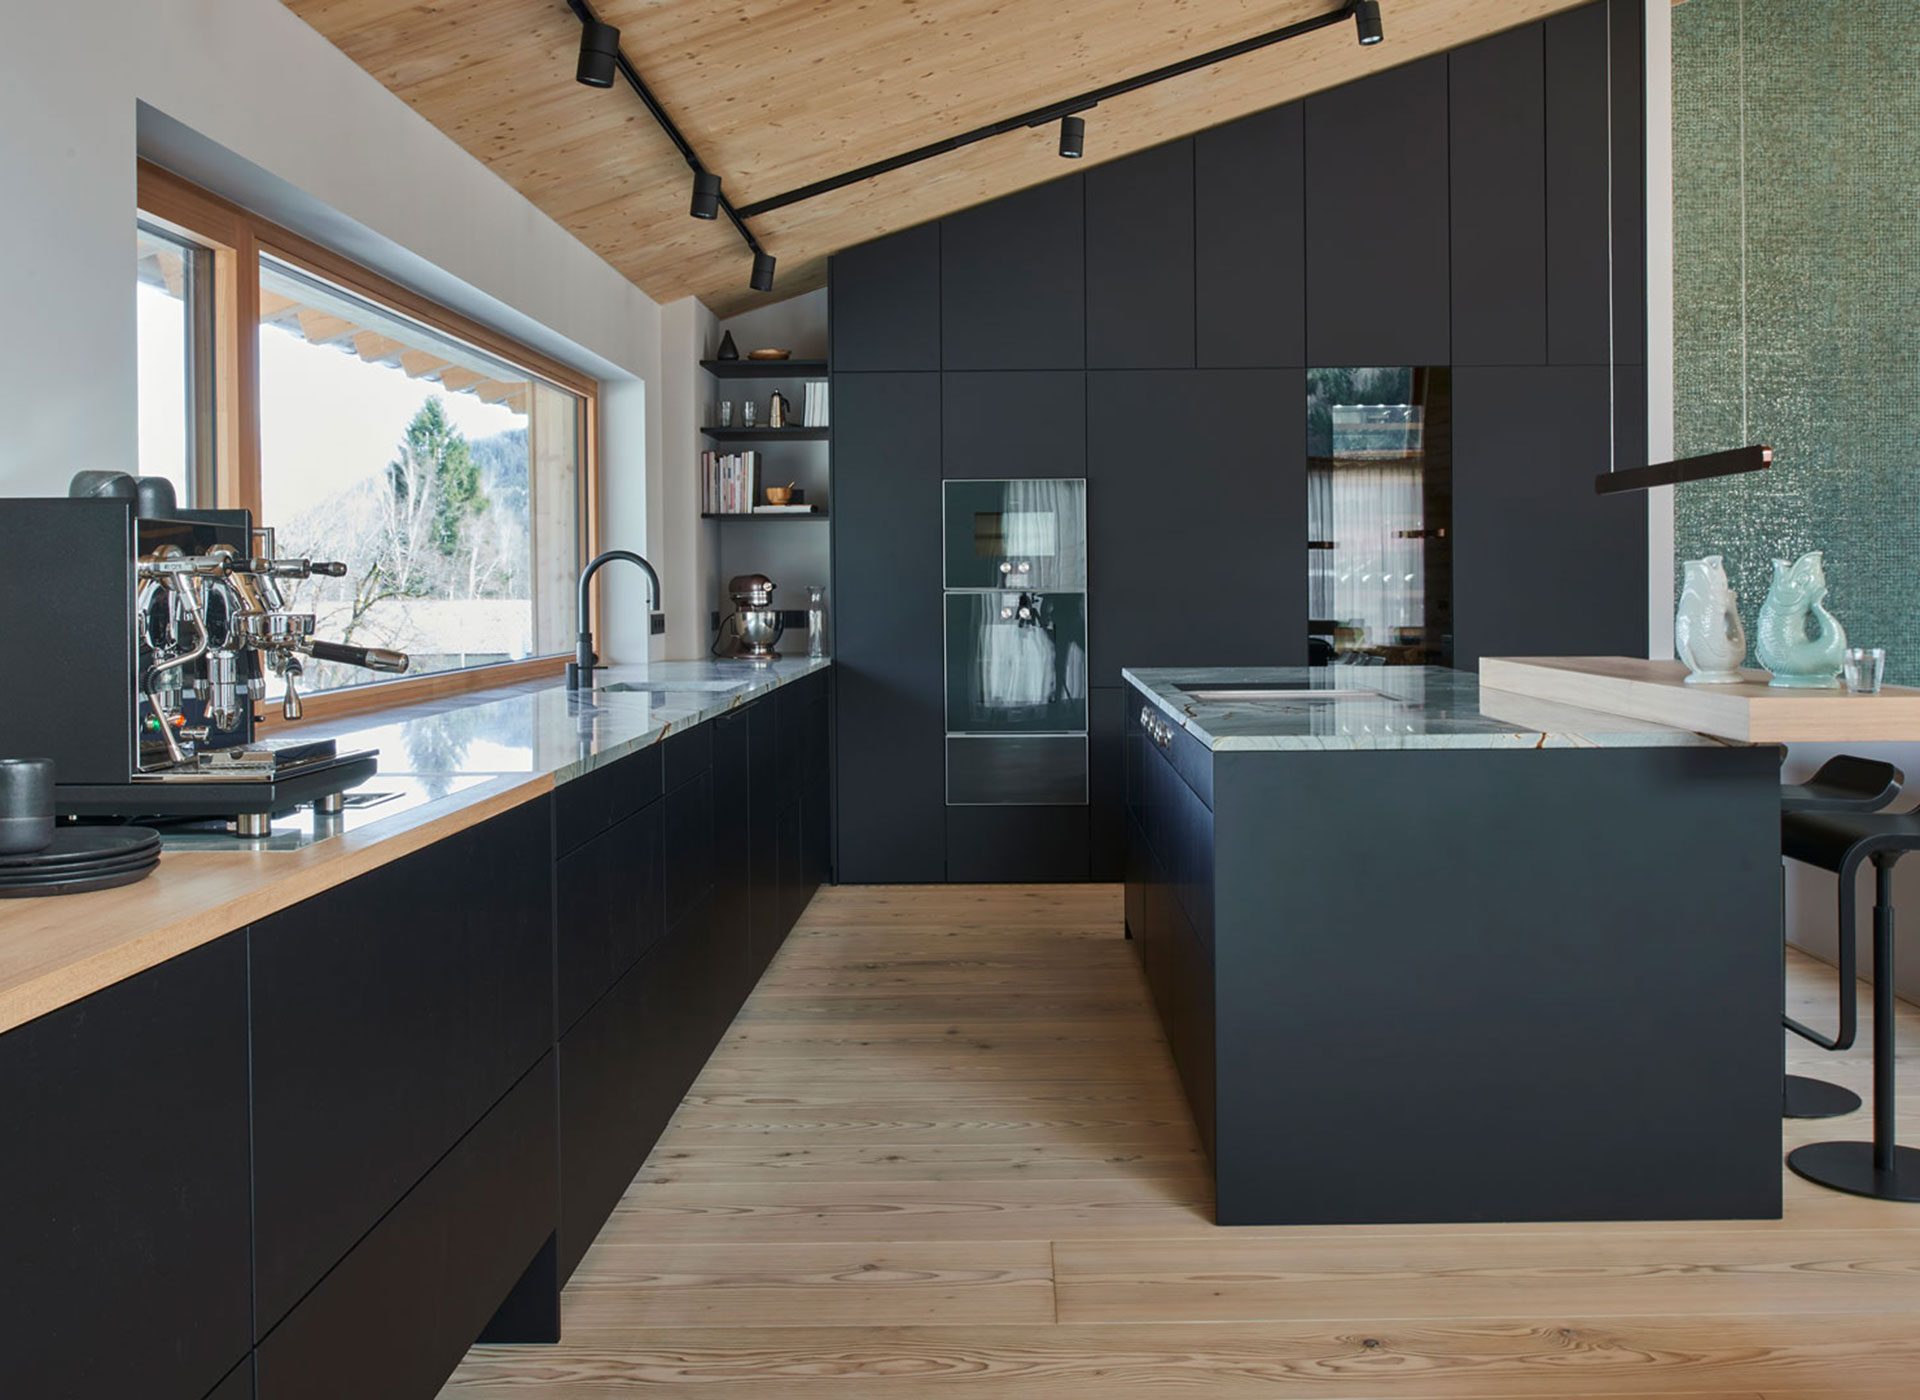 Küche mit besonders gemustertem Naturstein und schwarzen Mattlackfronten bis unters Dach.